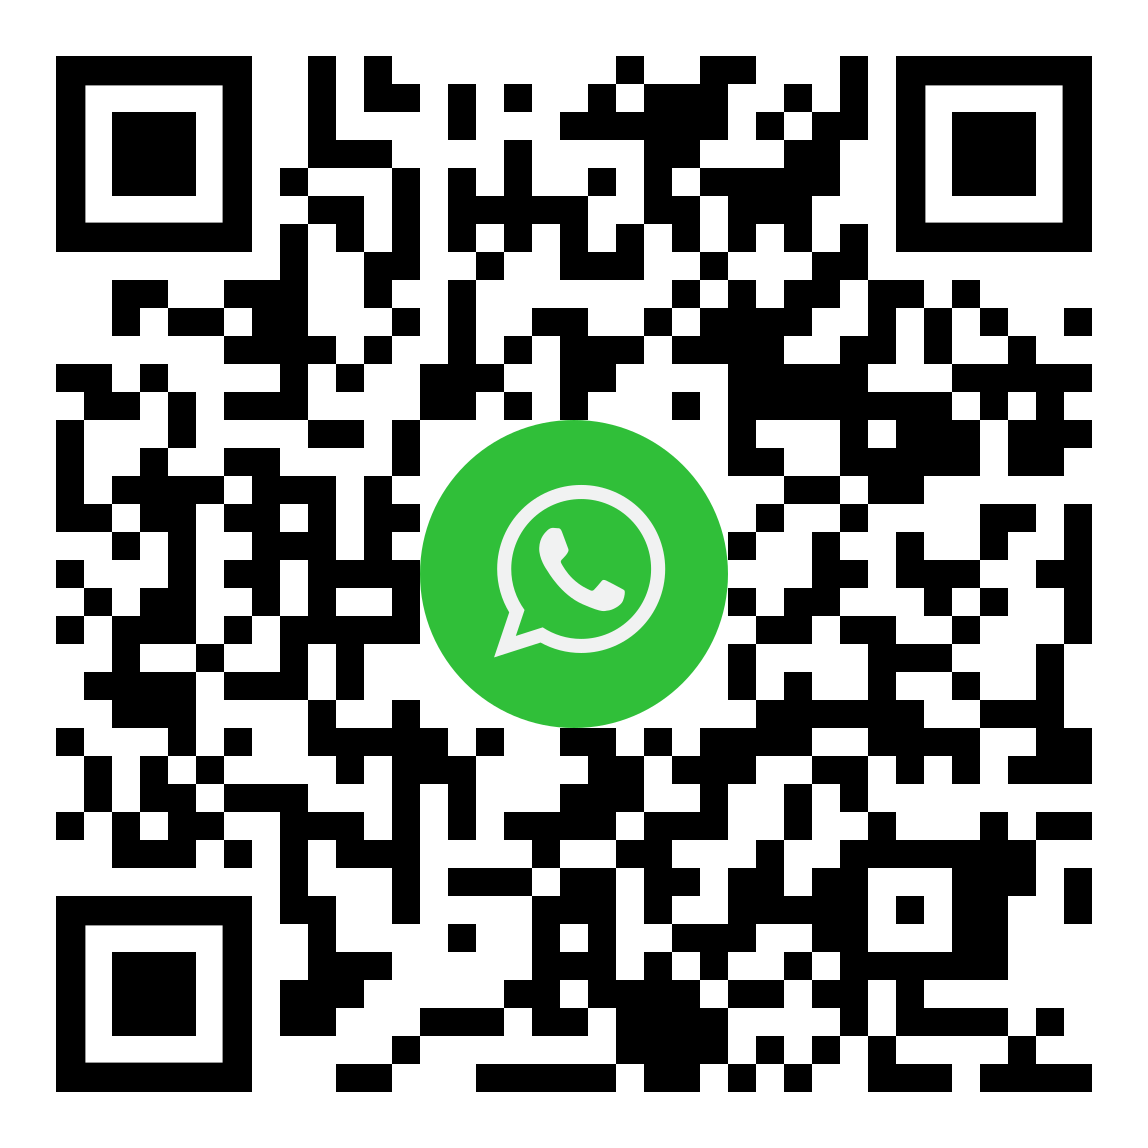 Whatsapp business Green project srl qr code